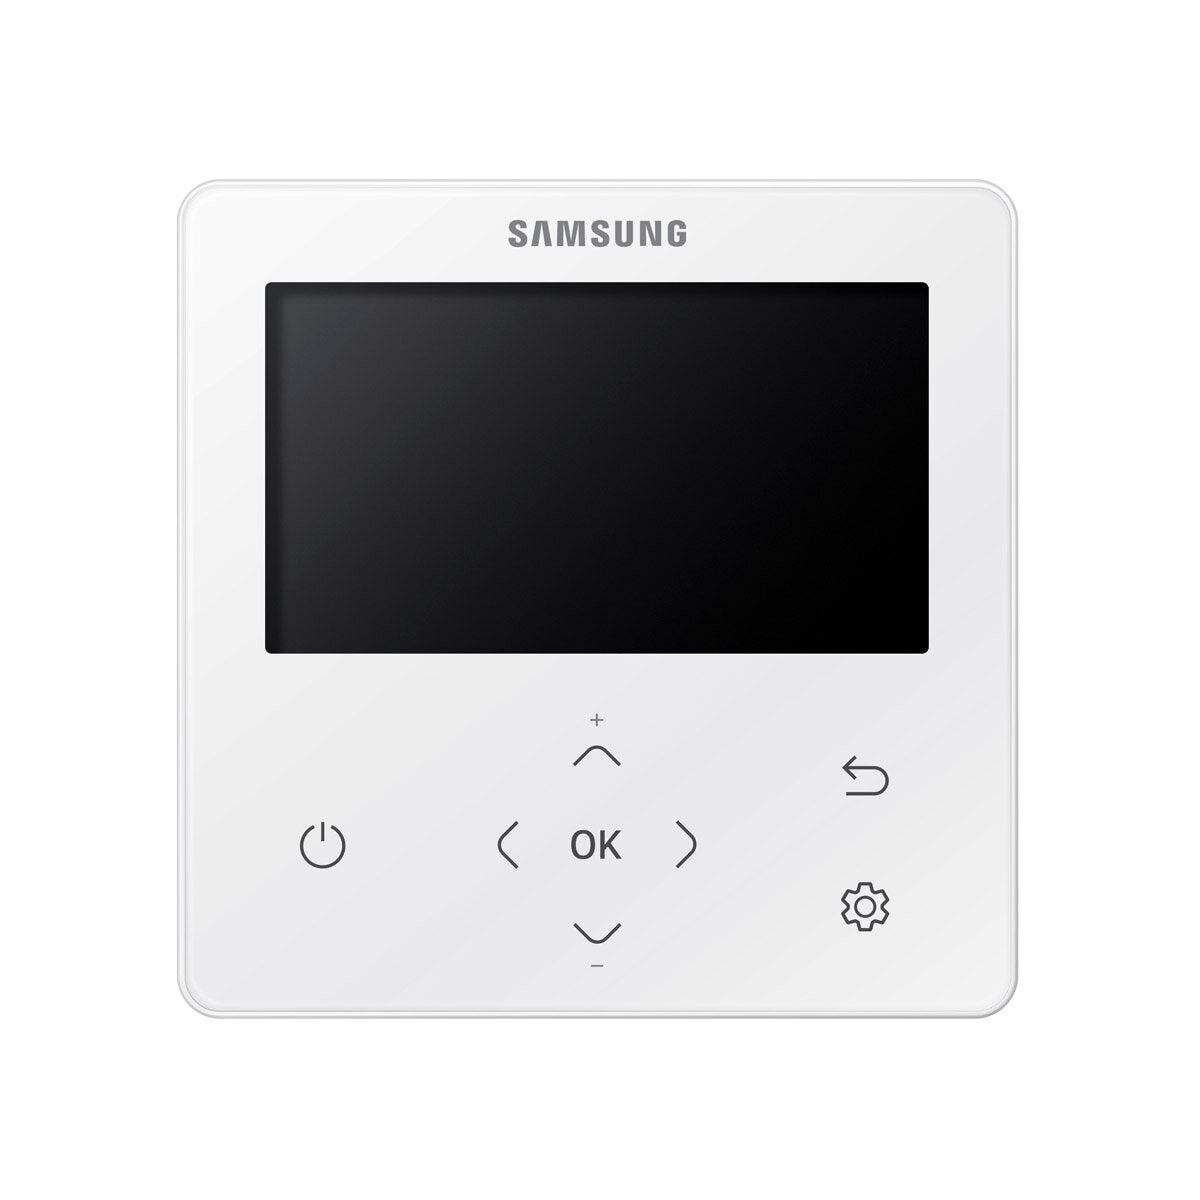 Samsung Klimaanlage Cassette WindFree 1 Way Dual Split 12000 + 12000 BTU Inverter A+++ Außeneinheit 5,0 kW